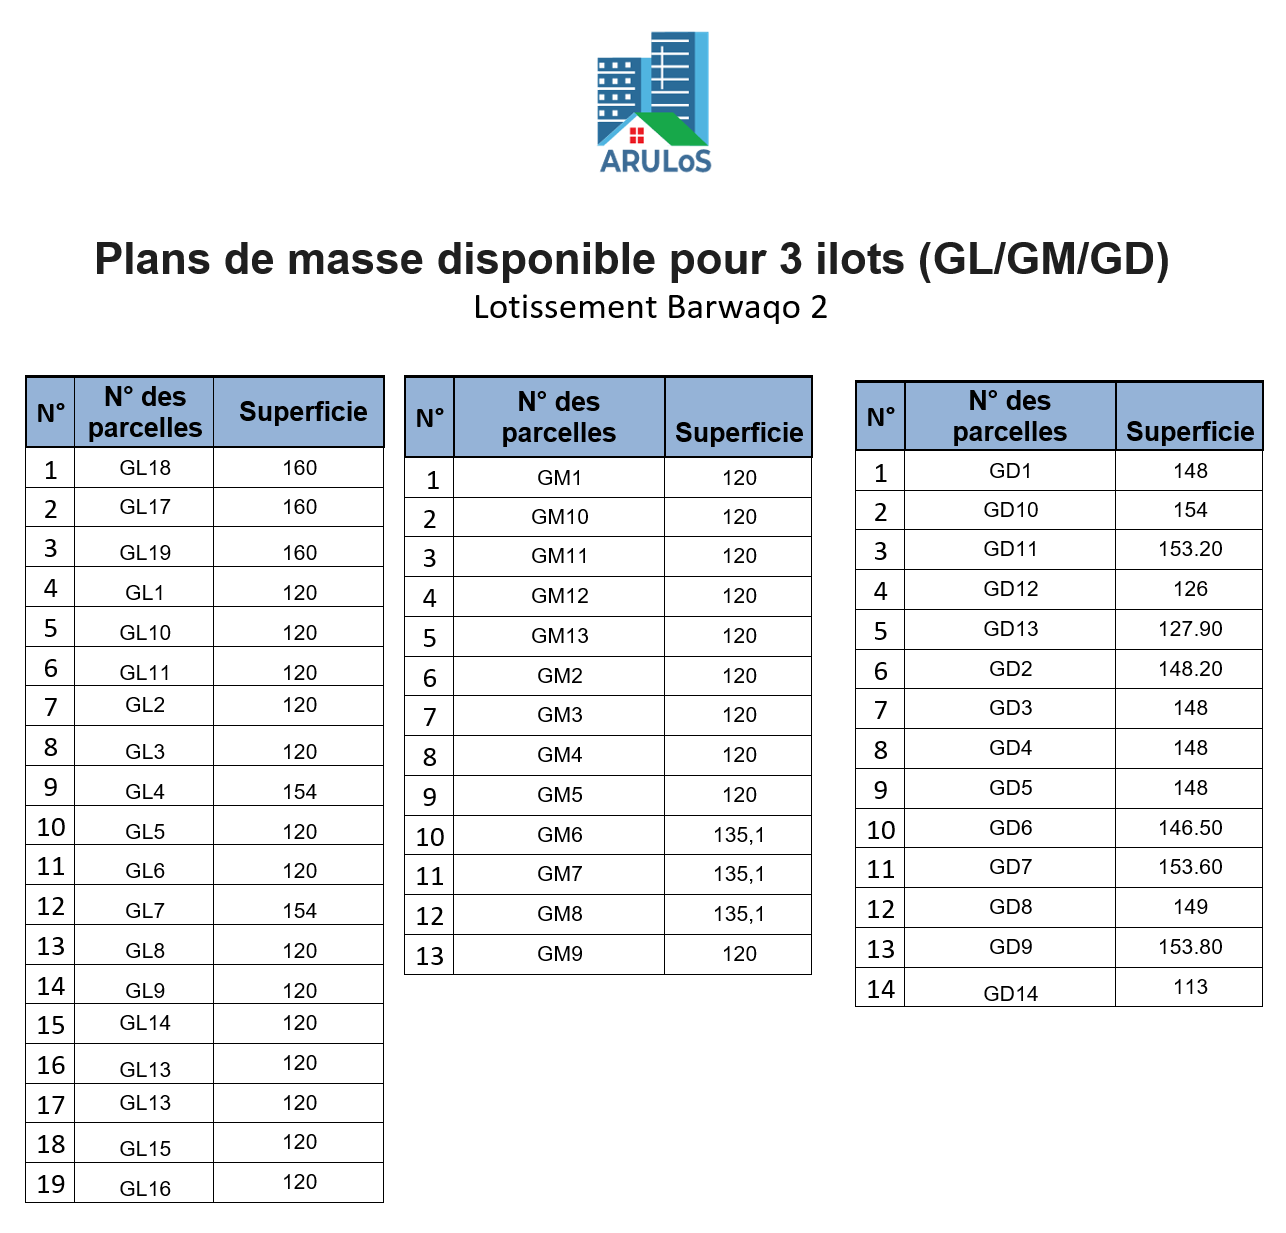 Plans de masse disponible à l'Agence pour 3 ilots (GL/GM/GD)